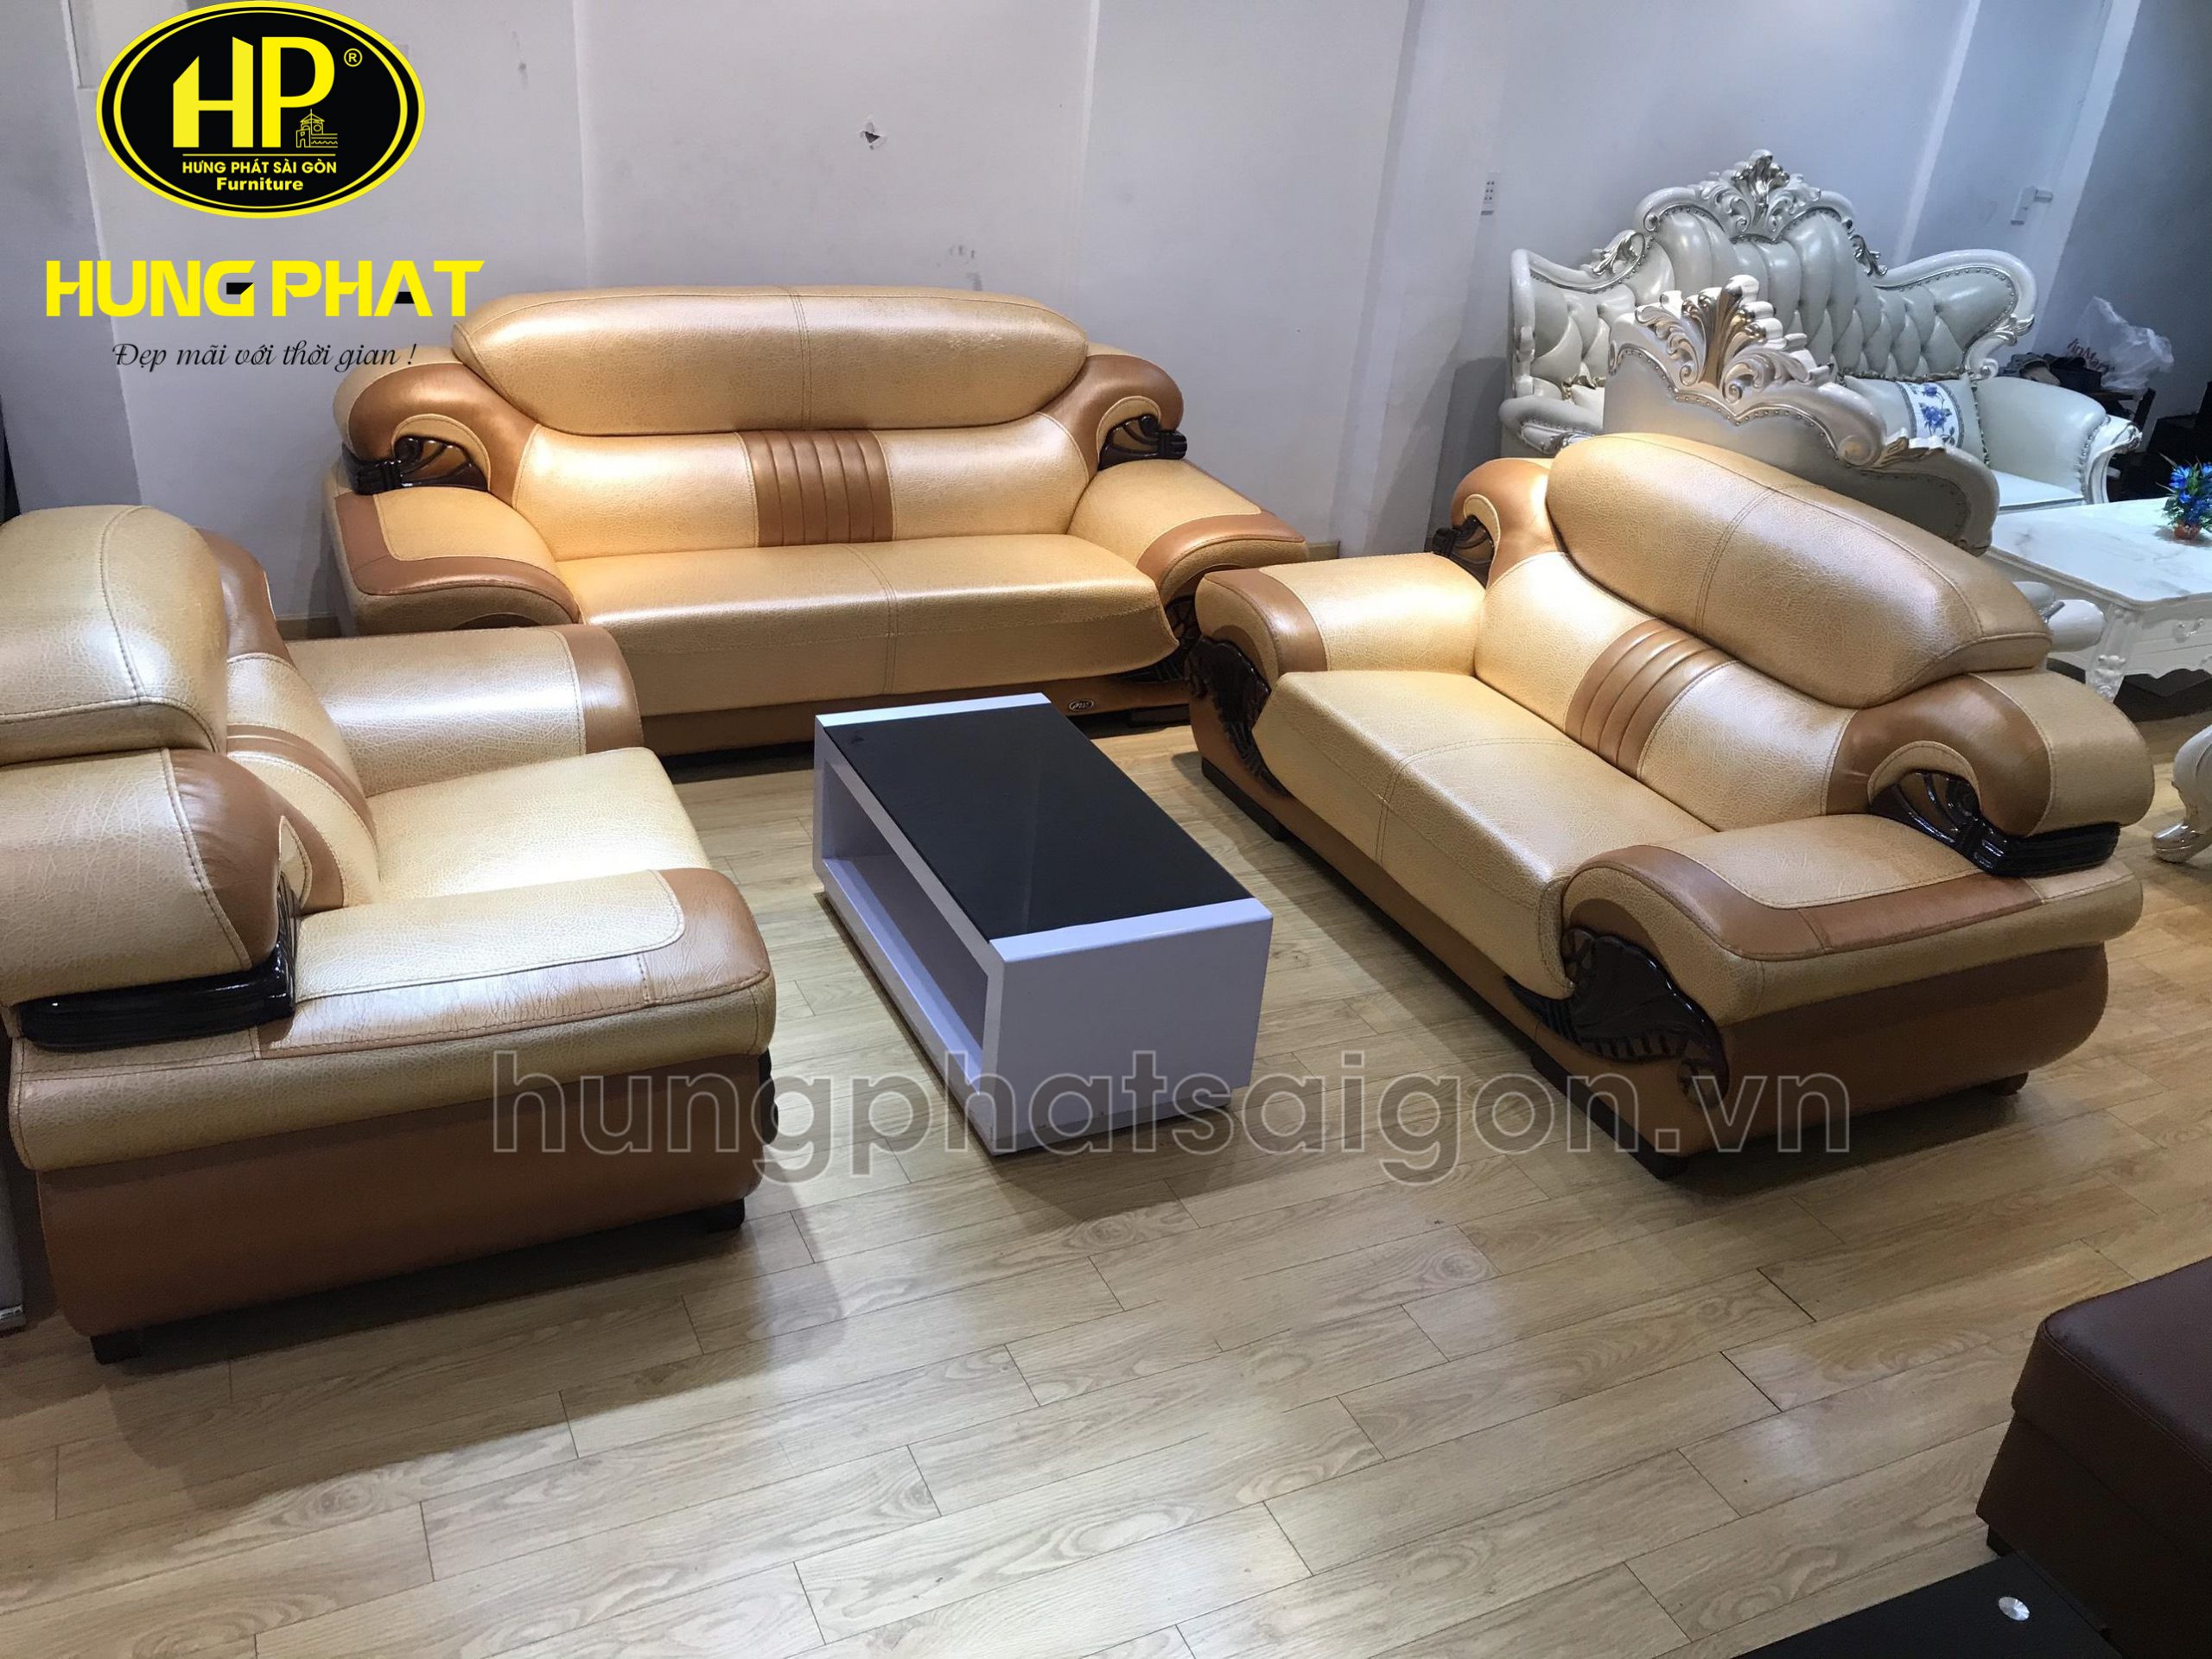 Nếu bạn đang tìm kiếm bộ bàn ghế sofa để trang trí cho không gian sống của mình, hãy tìm đến Việt Trì. Với thiết kế độc đáo và chất lượng tốt, bộ bàn ghế sofa ở Việt Trì sẽ không làm bạn thất vọng.